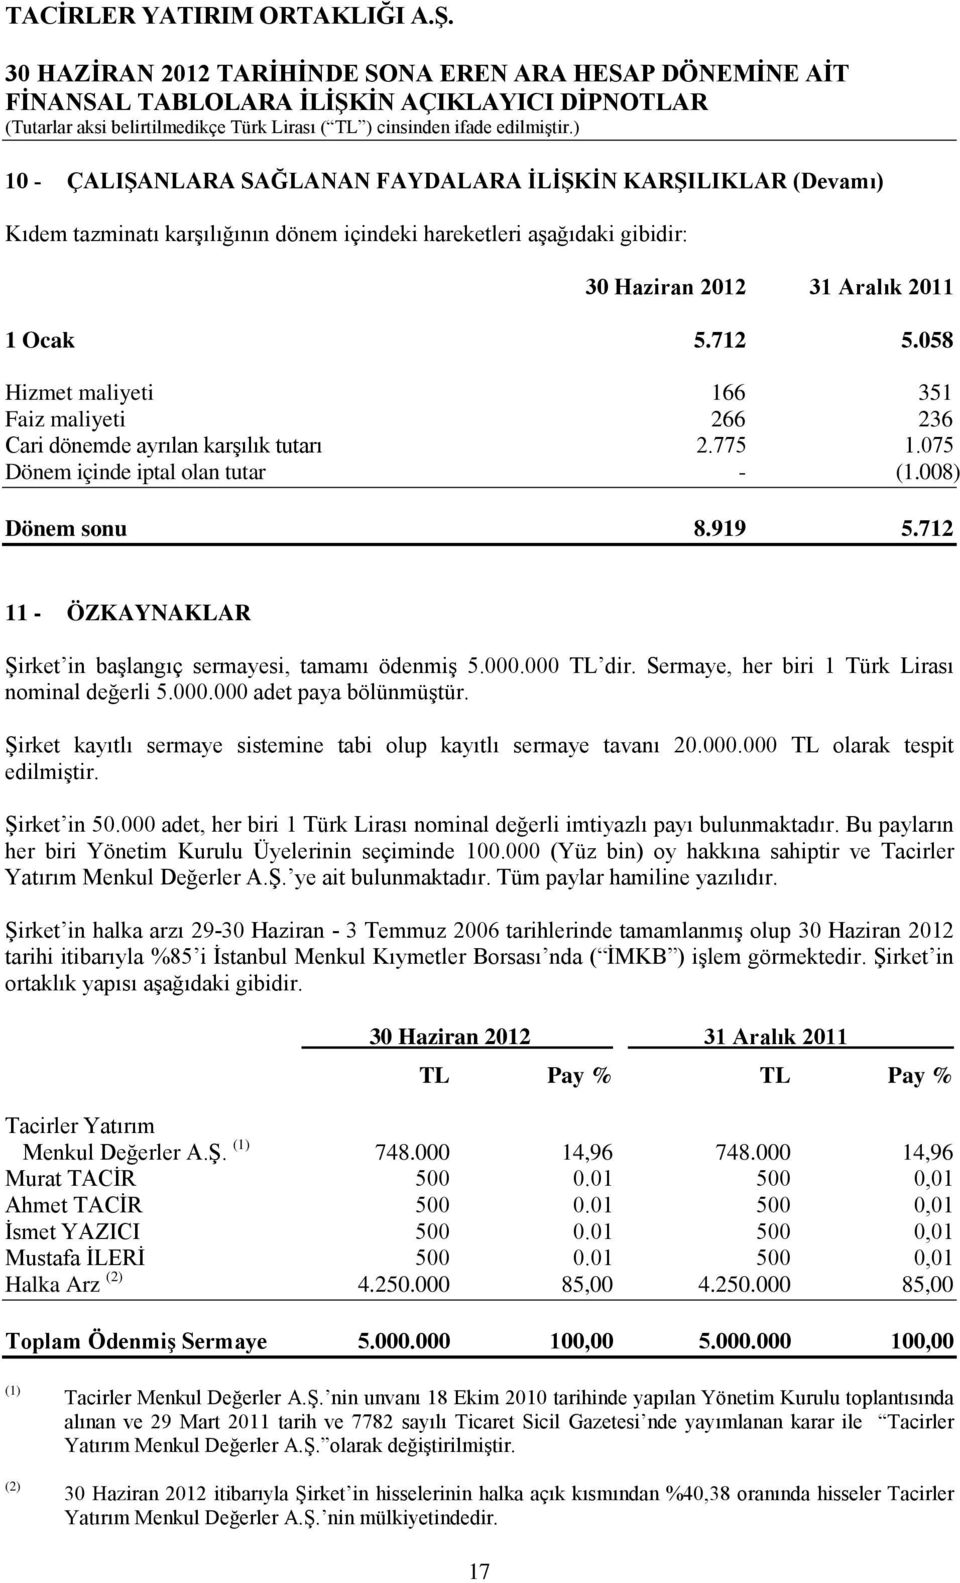 712 11 - ÖZKAYNAKLAR Şirket in başlangıç sermayesi, tamamı ödenmiş 5.000.000 TL dir. Sermaye, her biri 1 Türk Lirası nominal değerli 5.000.000 adet paya bölünmüştür.